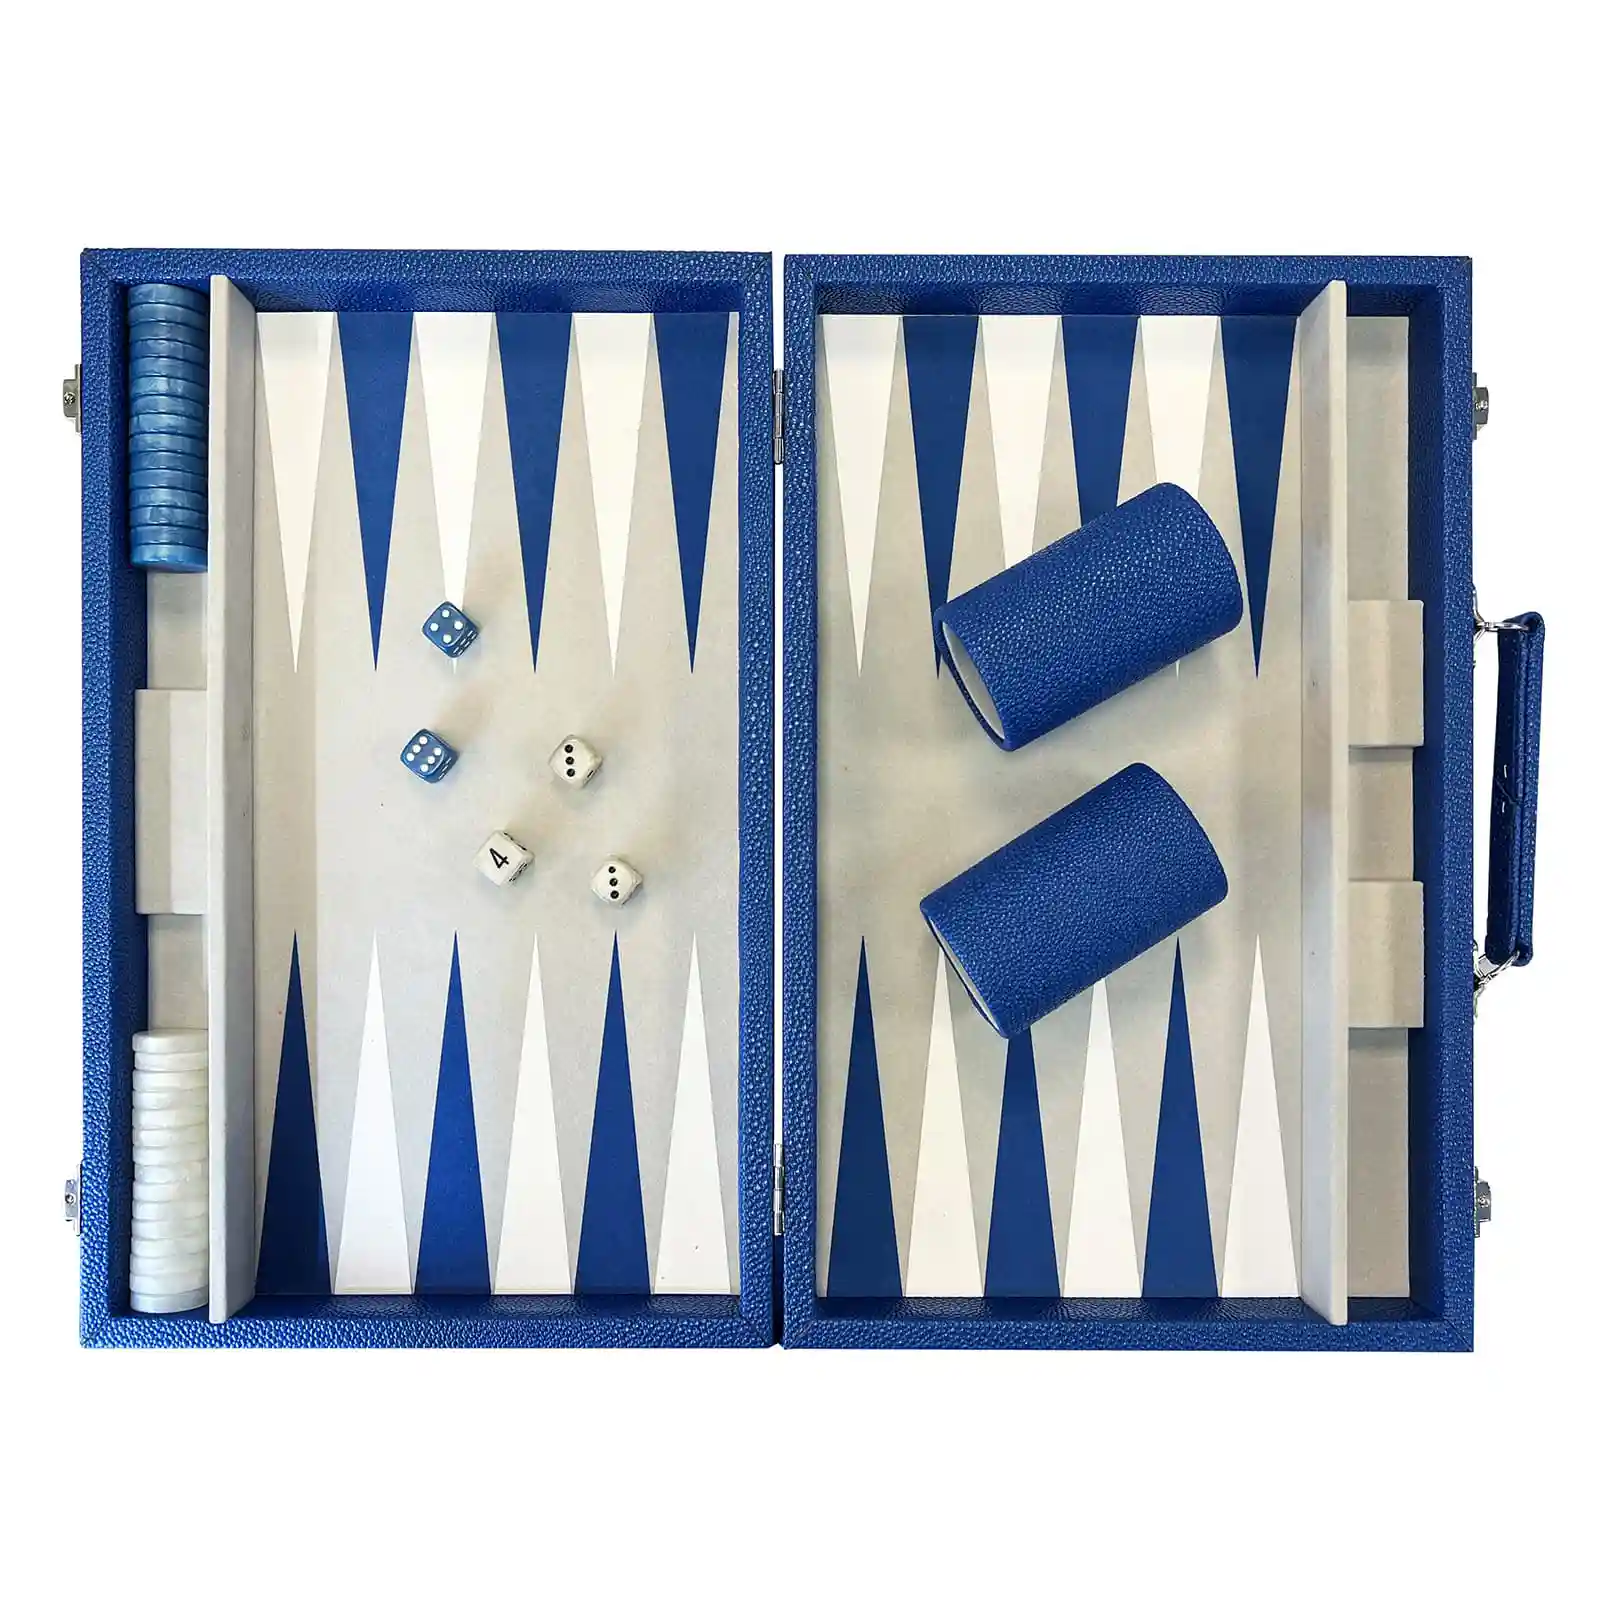 Backgammon-Kofferset aus gekrispeltem Kunstleder